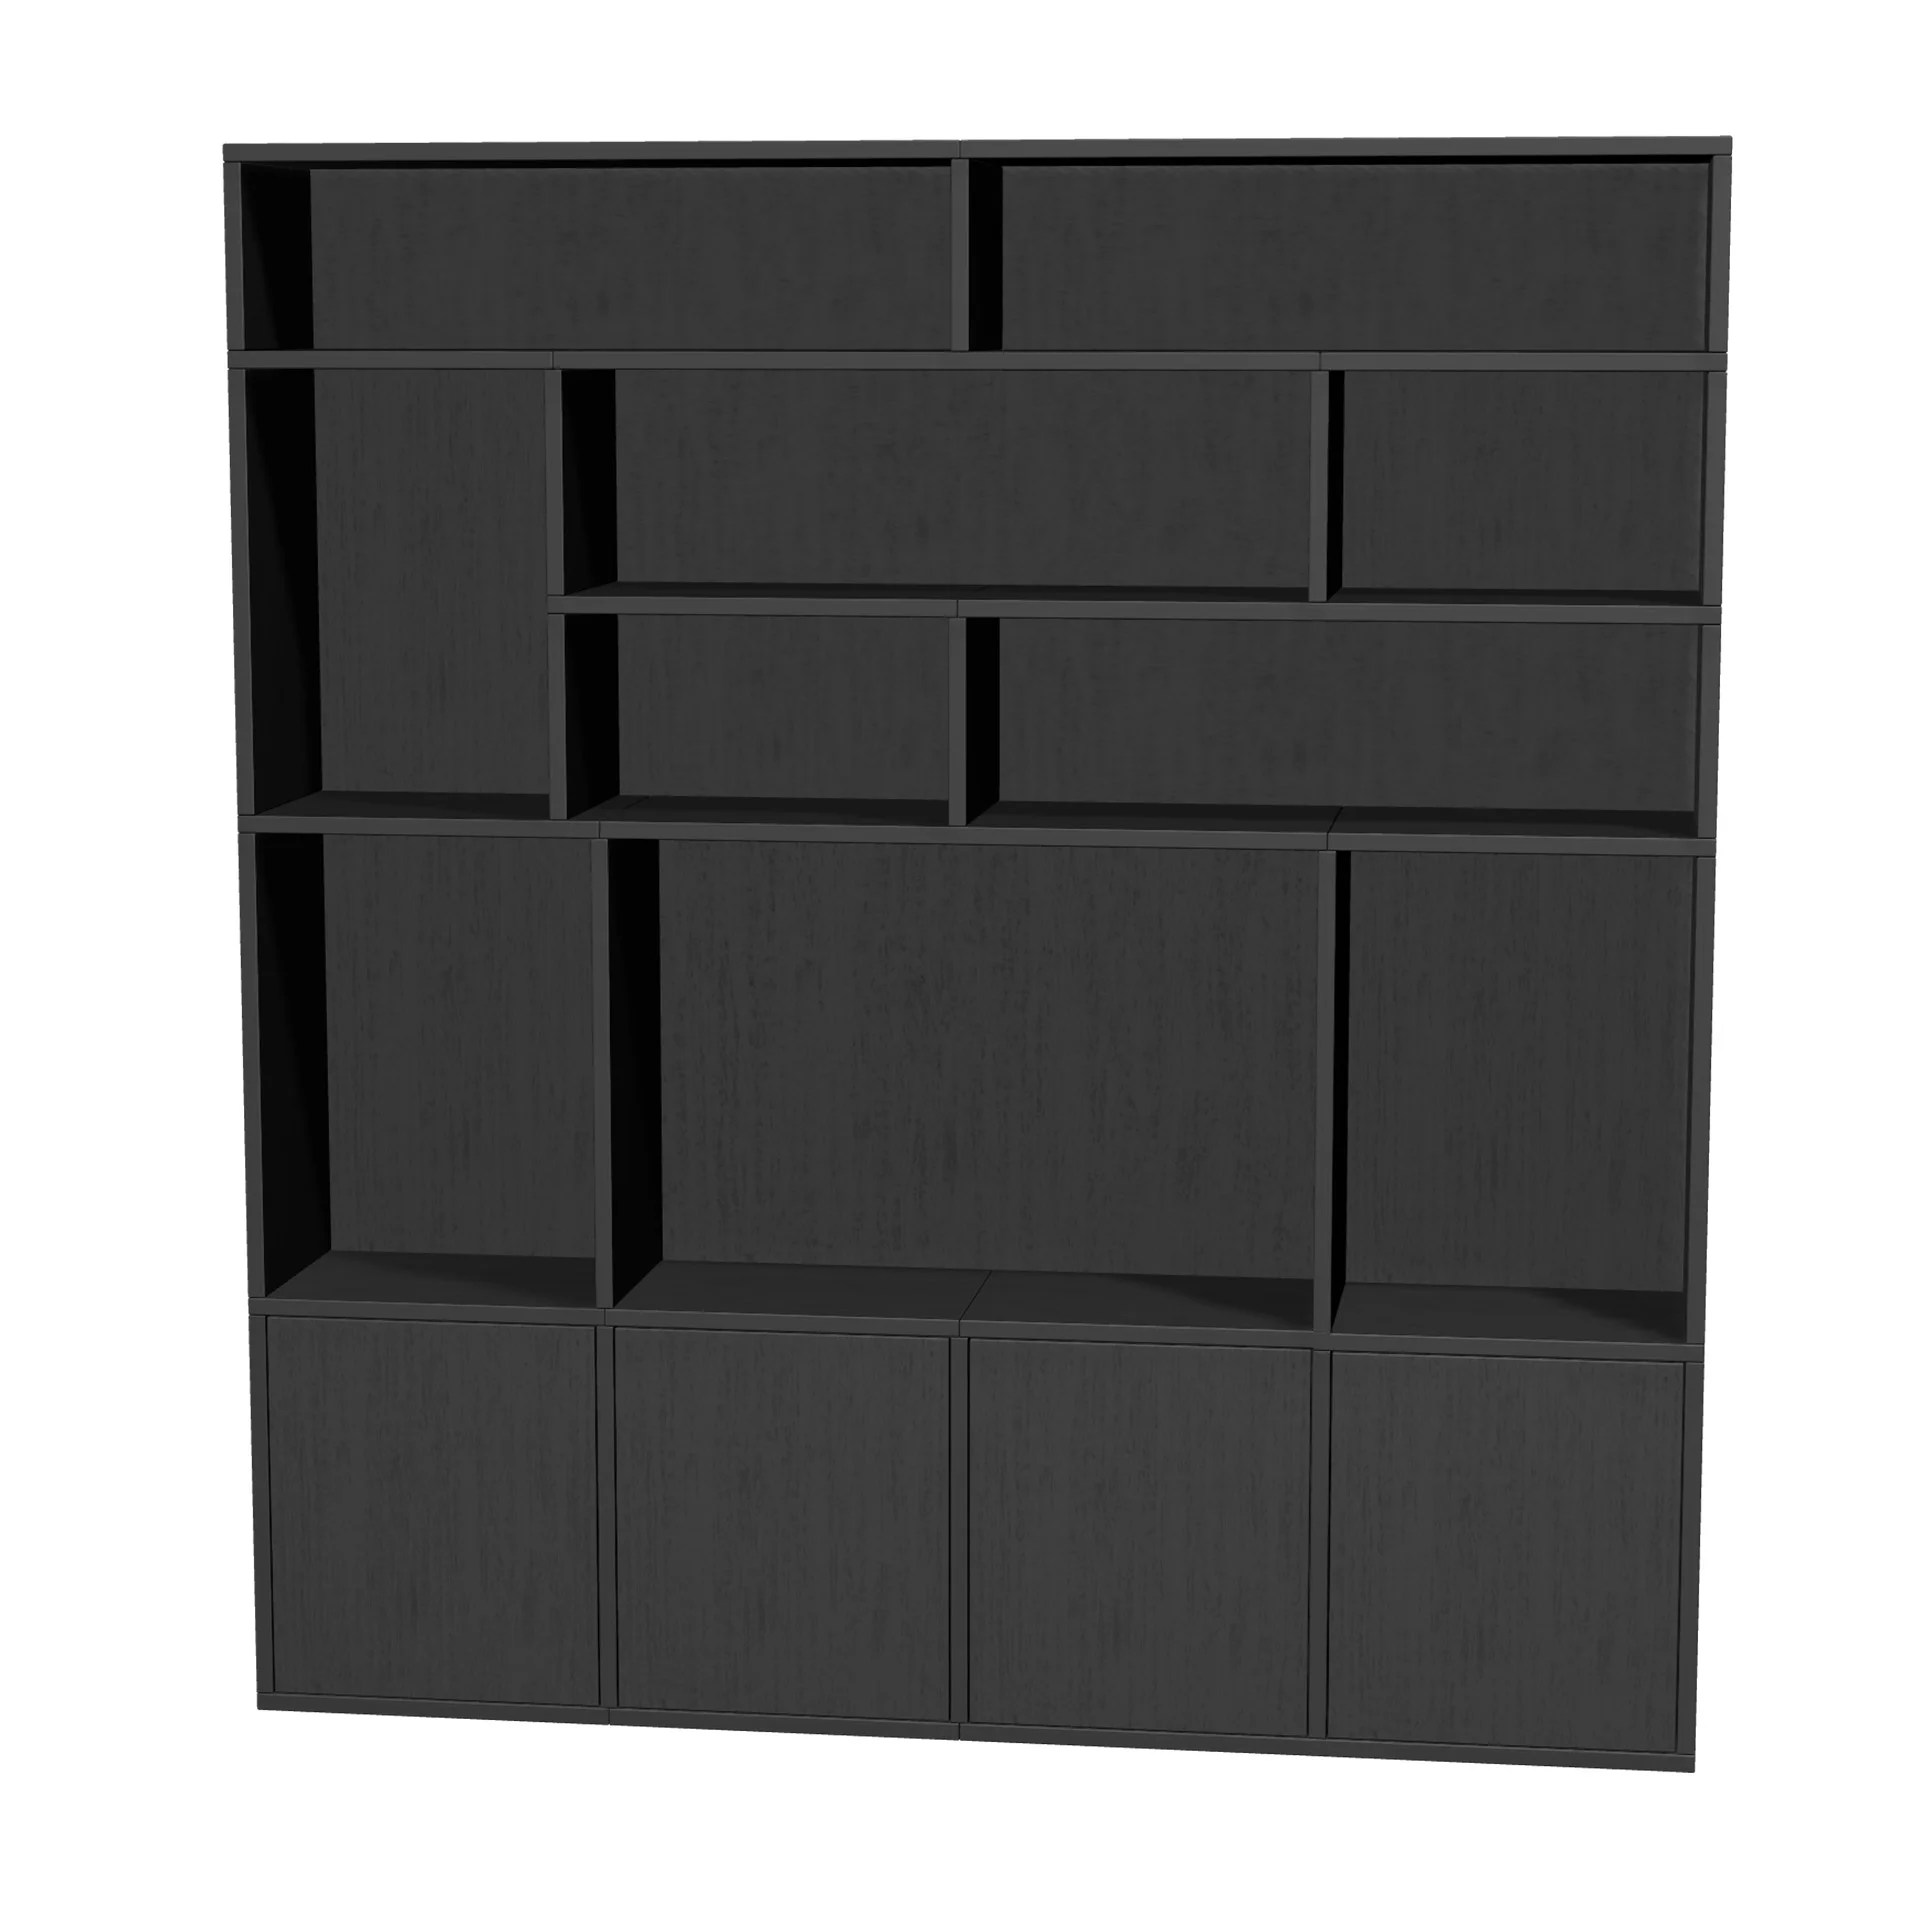 TSFC015 in black oak furniture board